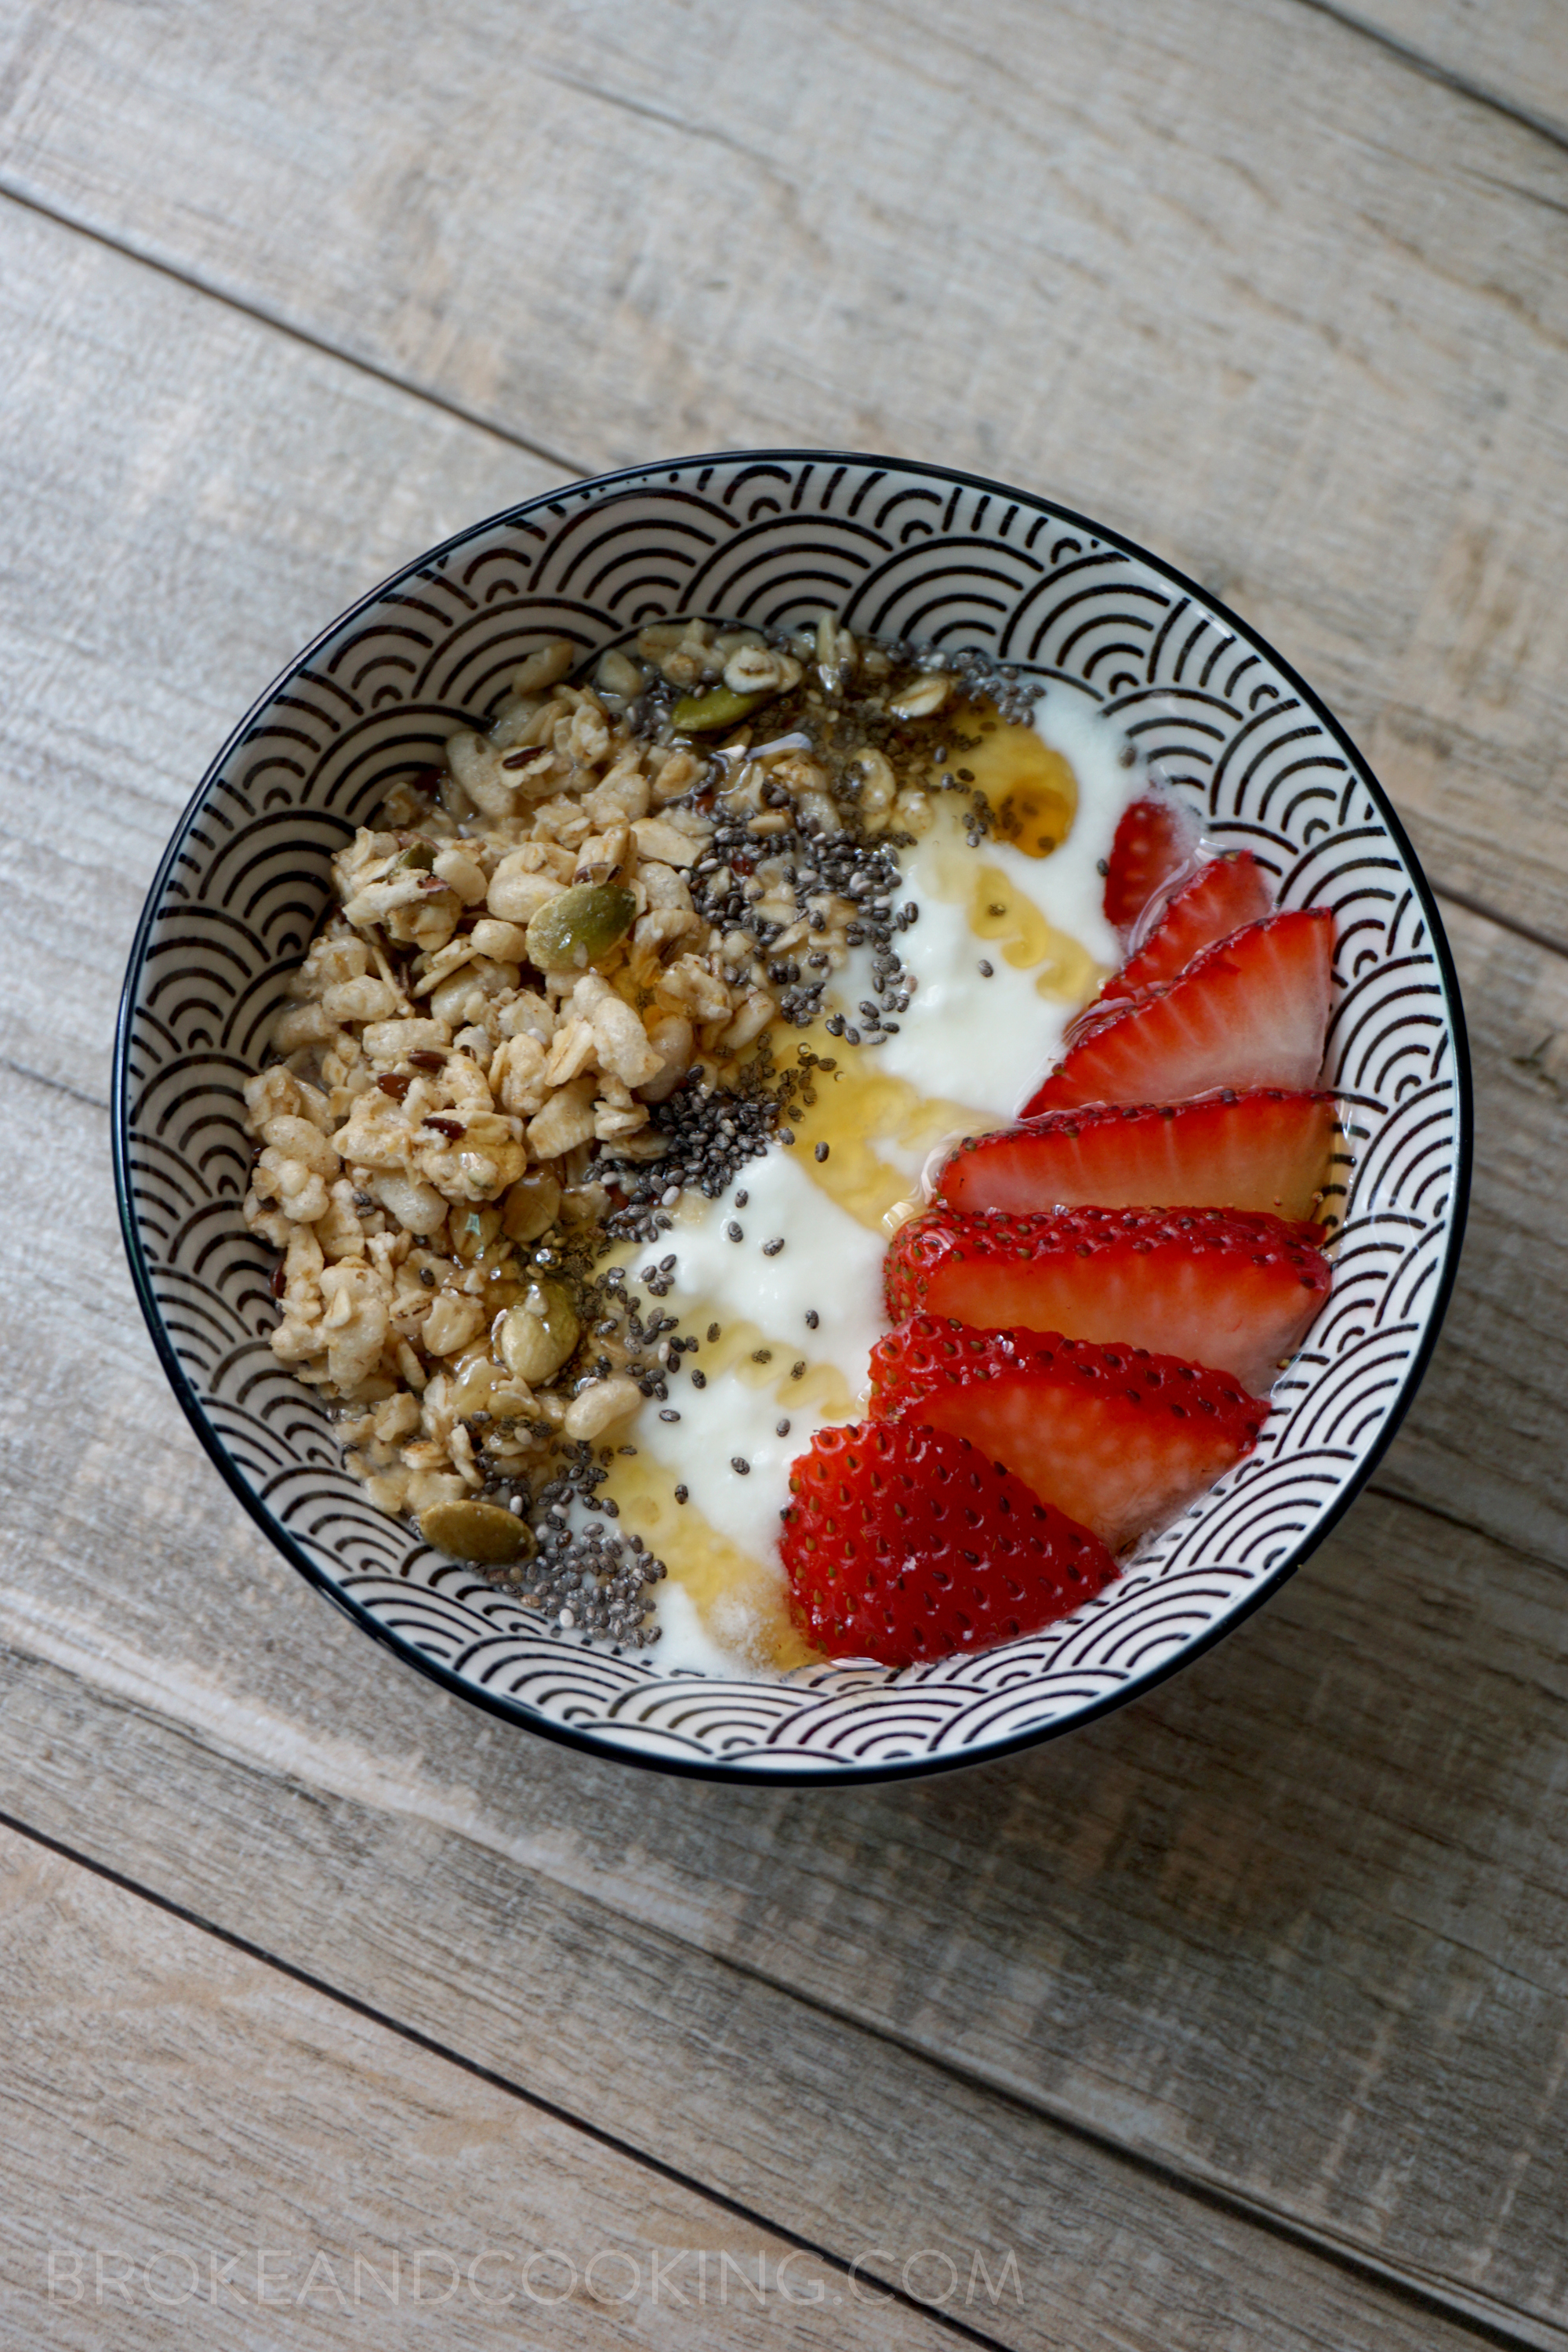 Breakfast Yogurt Bowls — Broke and Cooking